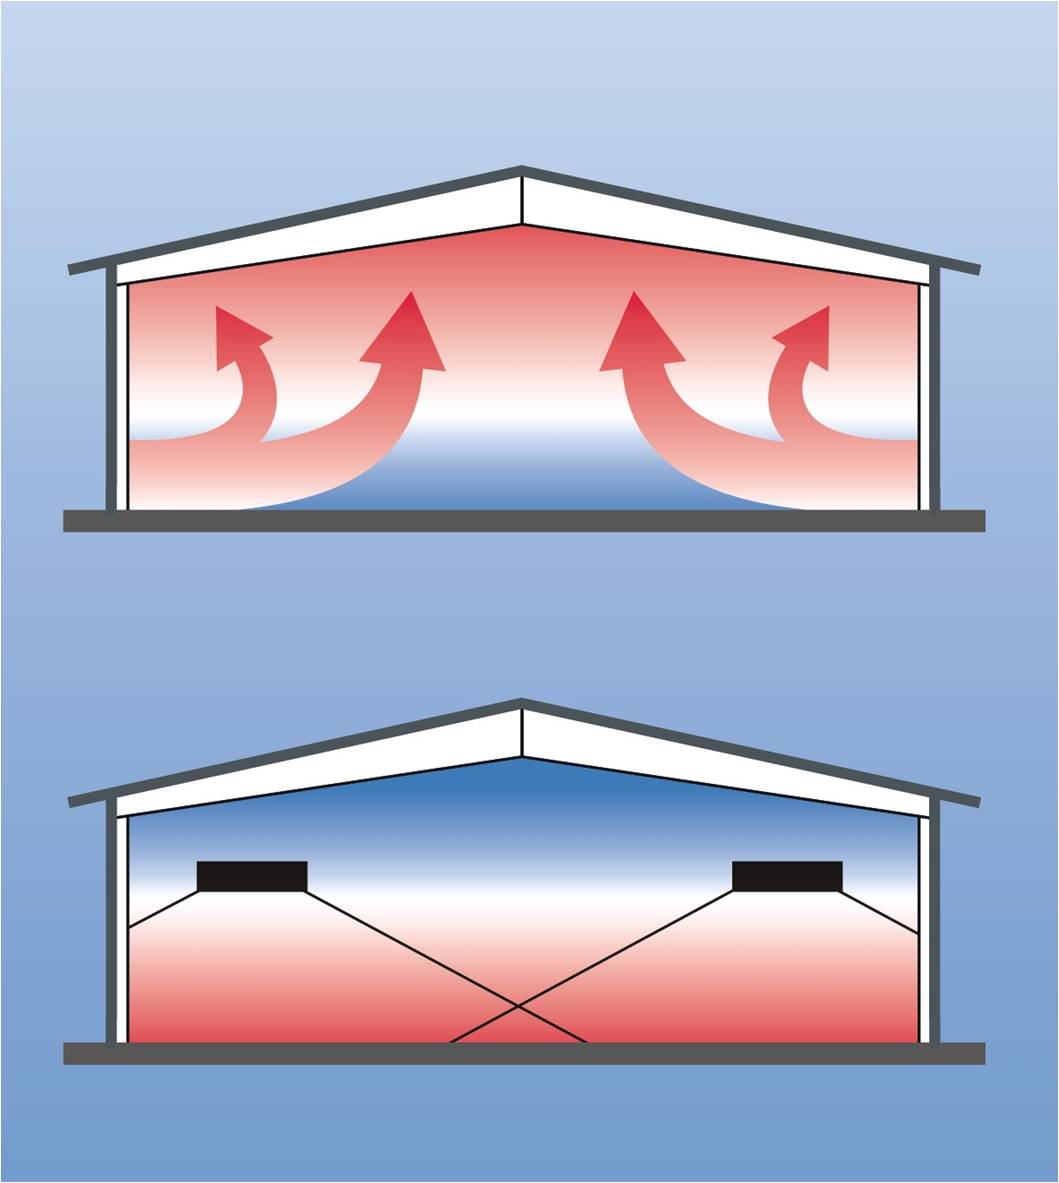 Hier sehen Sie einen schematischen Vergleich einer Wärmwellenheizung, die Wärme gezielt in den Wohnraum abstrahlt, mit einer Konvektionsheizung (oben), die die Wärme über die Raumluft verteilt und so ineffizienter den Raum beheizt. (Grafik: ASUE e.V.)